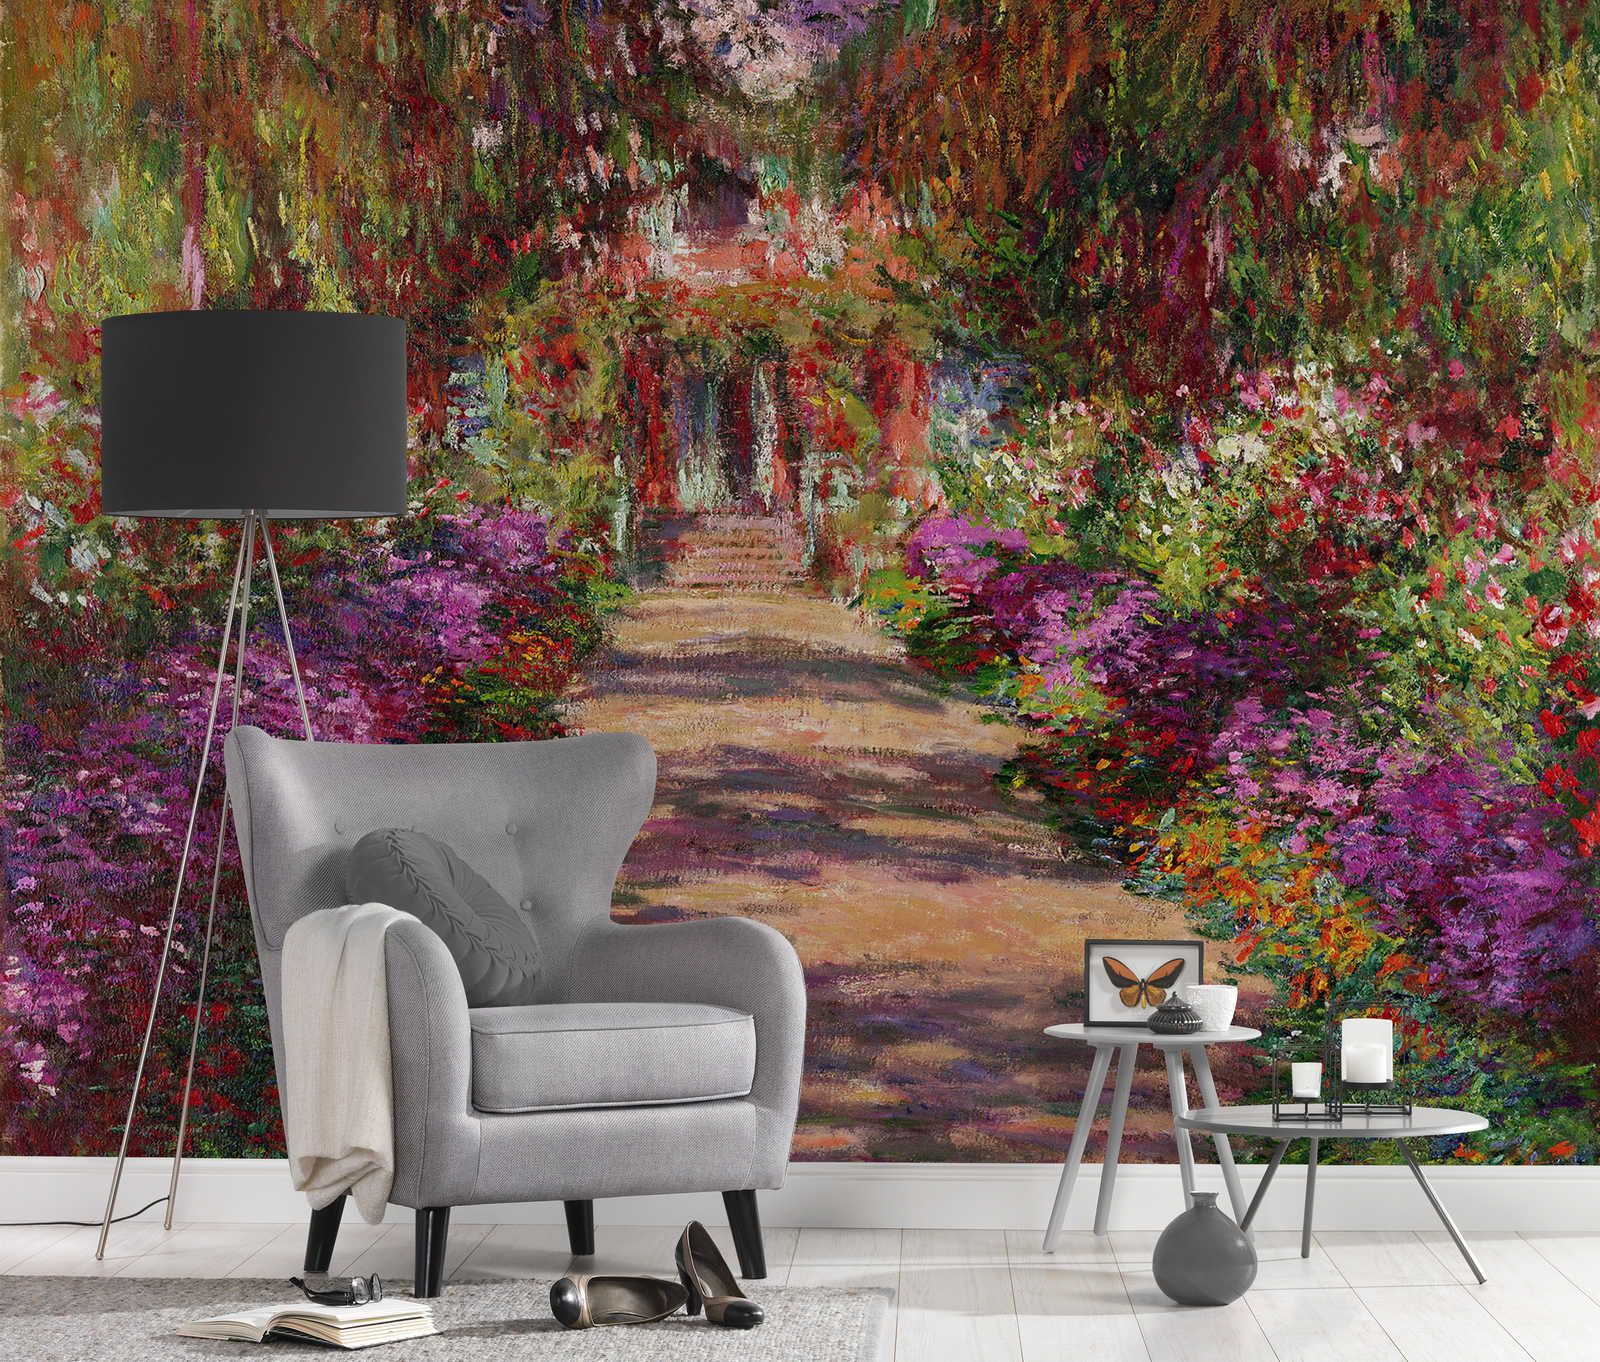             Muurschildering "Pad naar de tuin in Giverny" van Claude Monet
        